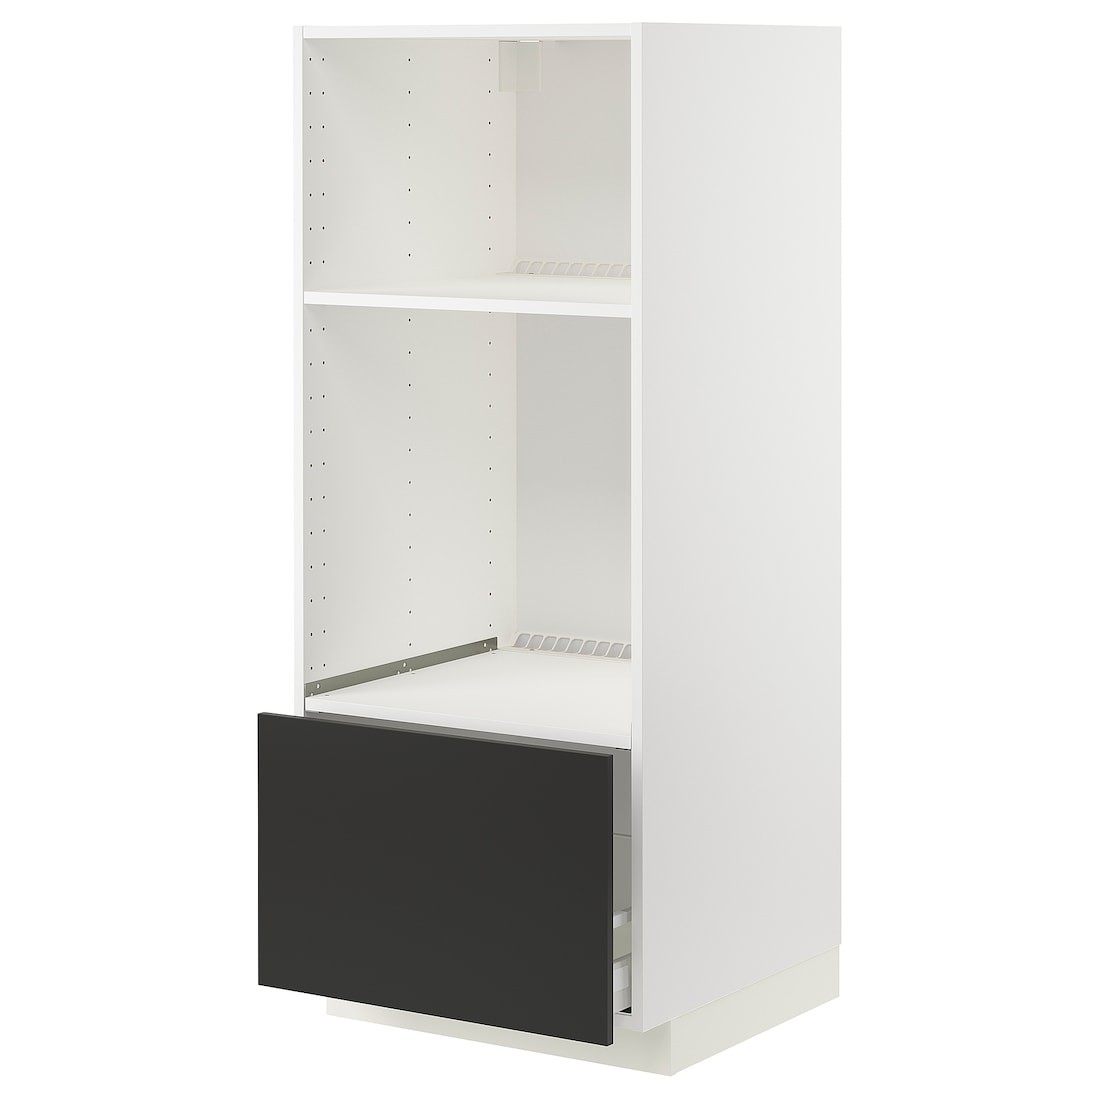 IKEA METOD МЕТОД / MAXIMERA МАКСИМЕРА Высокий шкаф для духовки / СВЧ, белый / Nickebo матовый антрацит, 60x60x140 см 49497942 | 494.979.42